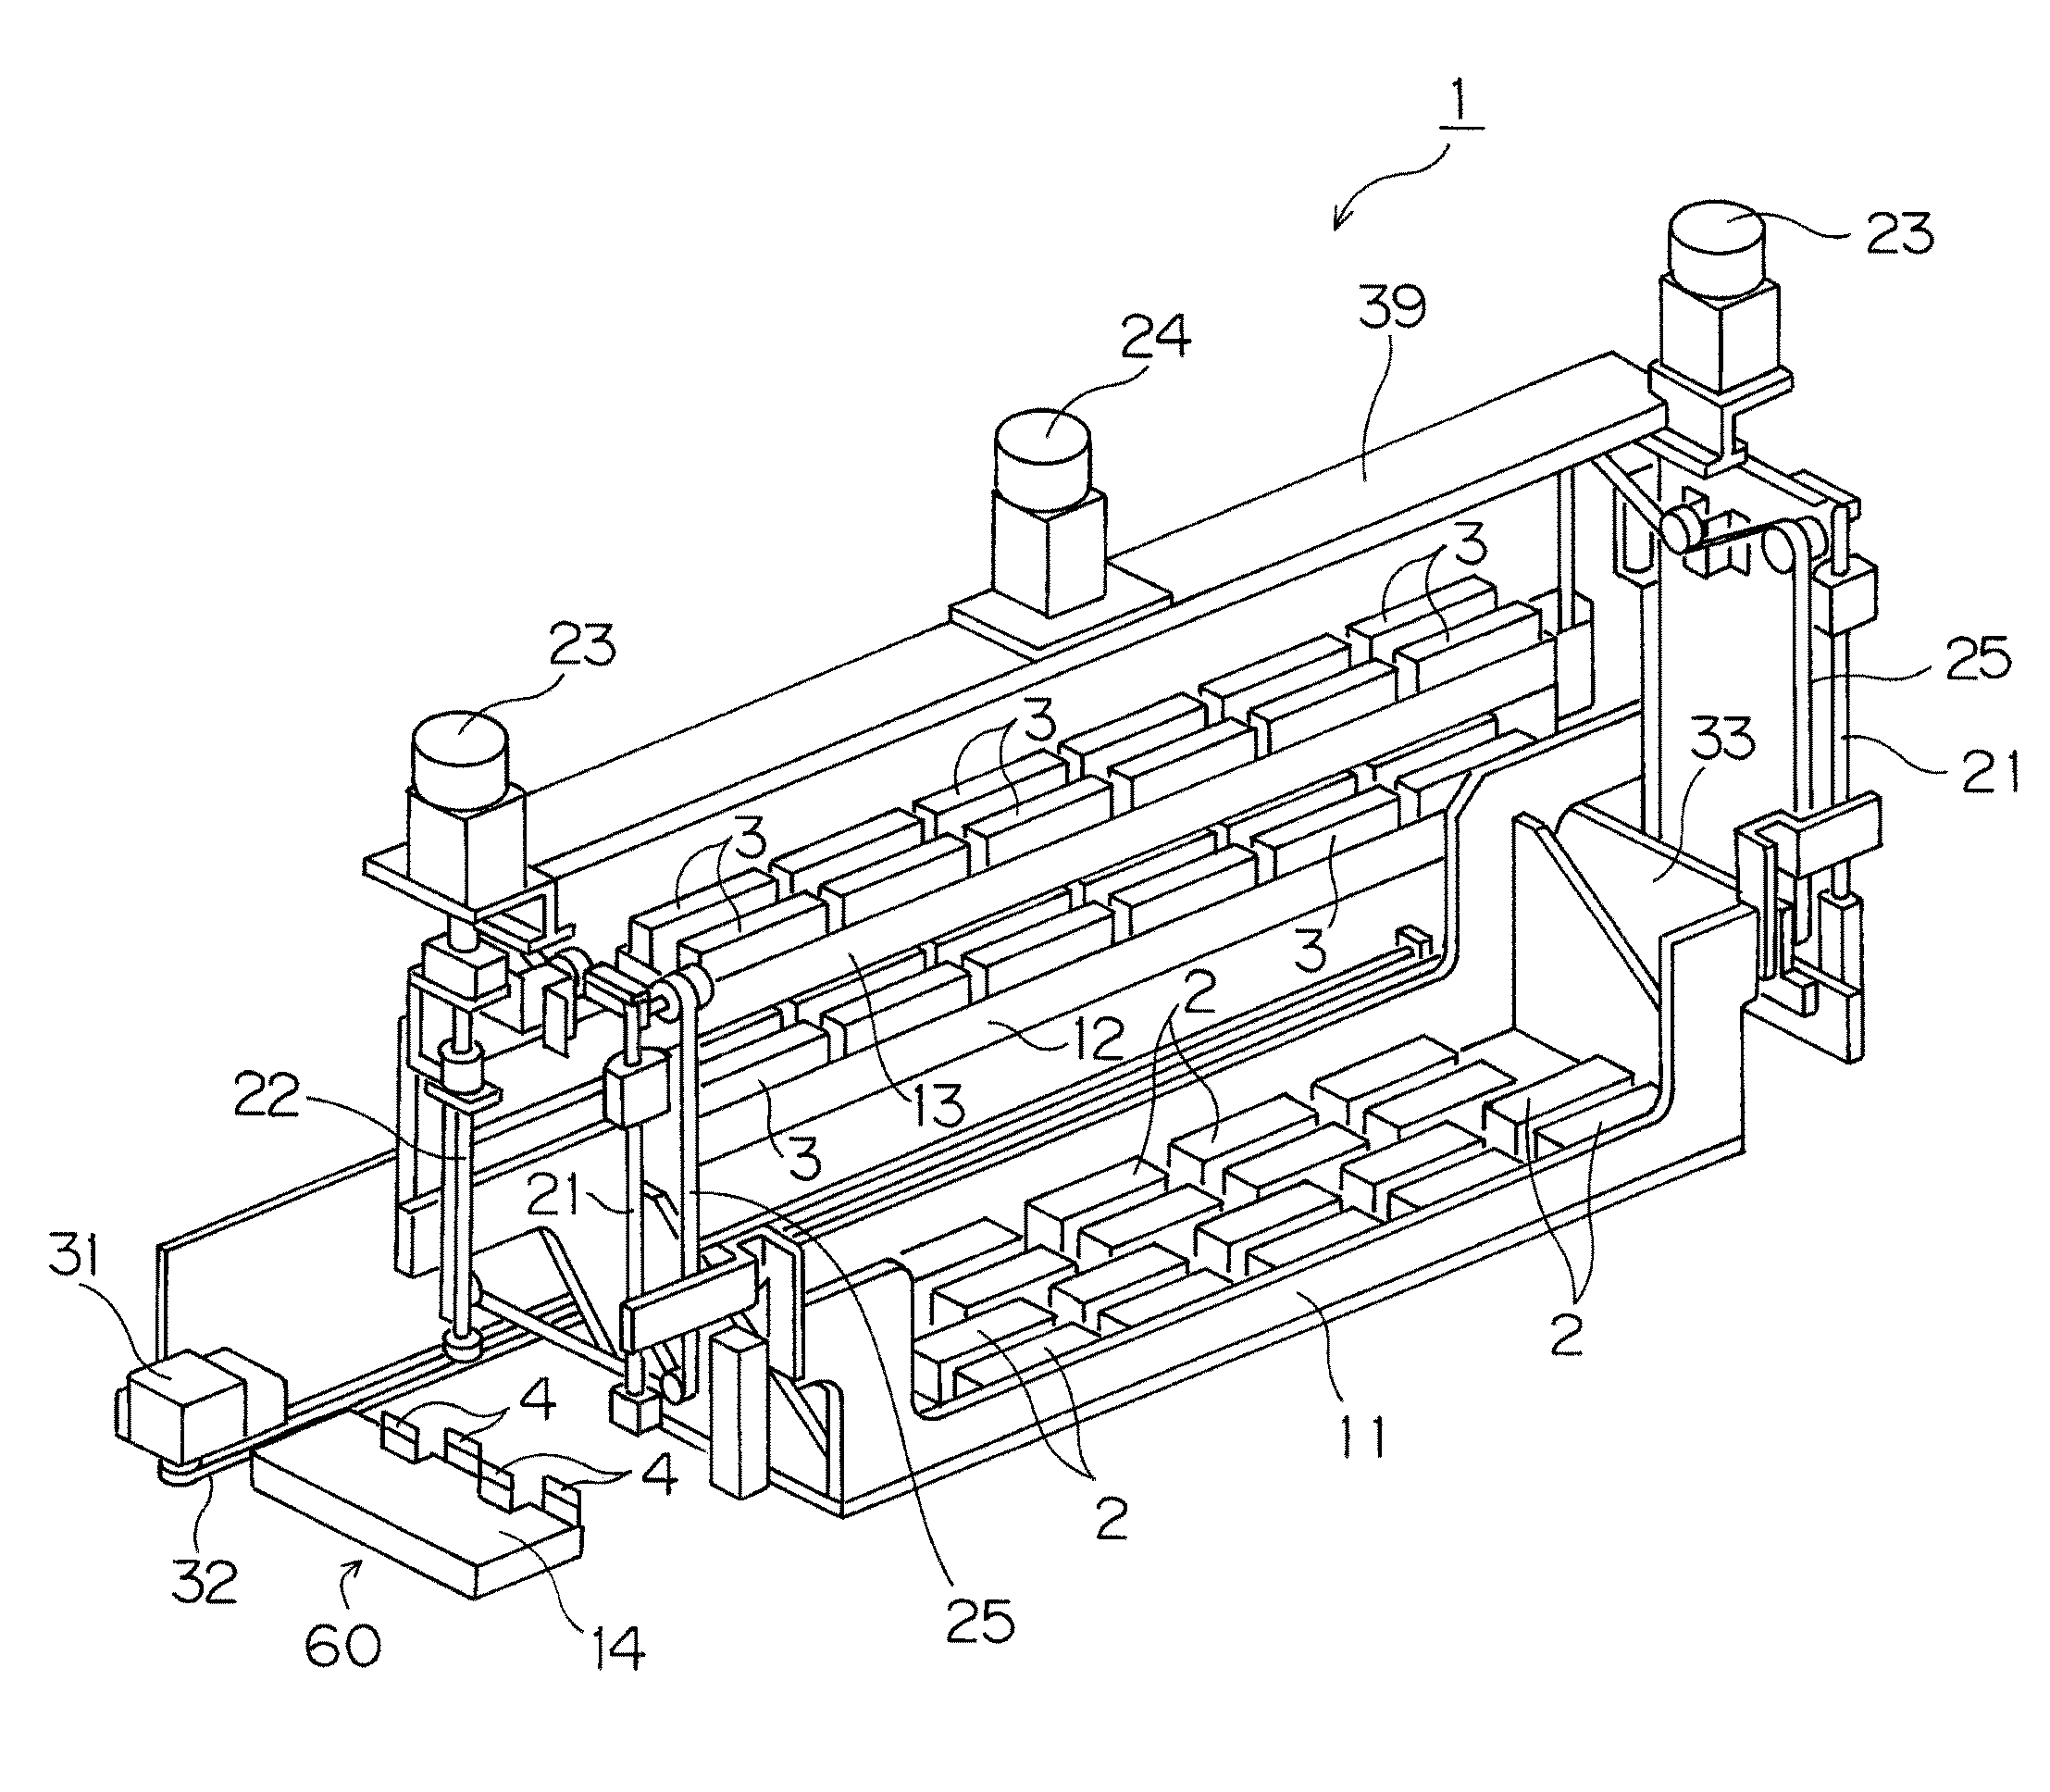 Inkjet printing apparatus